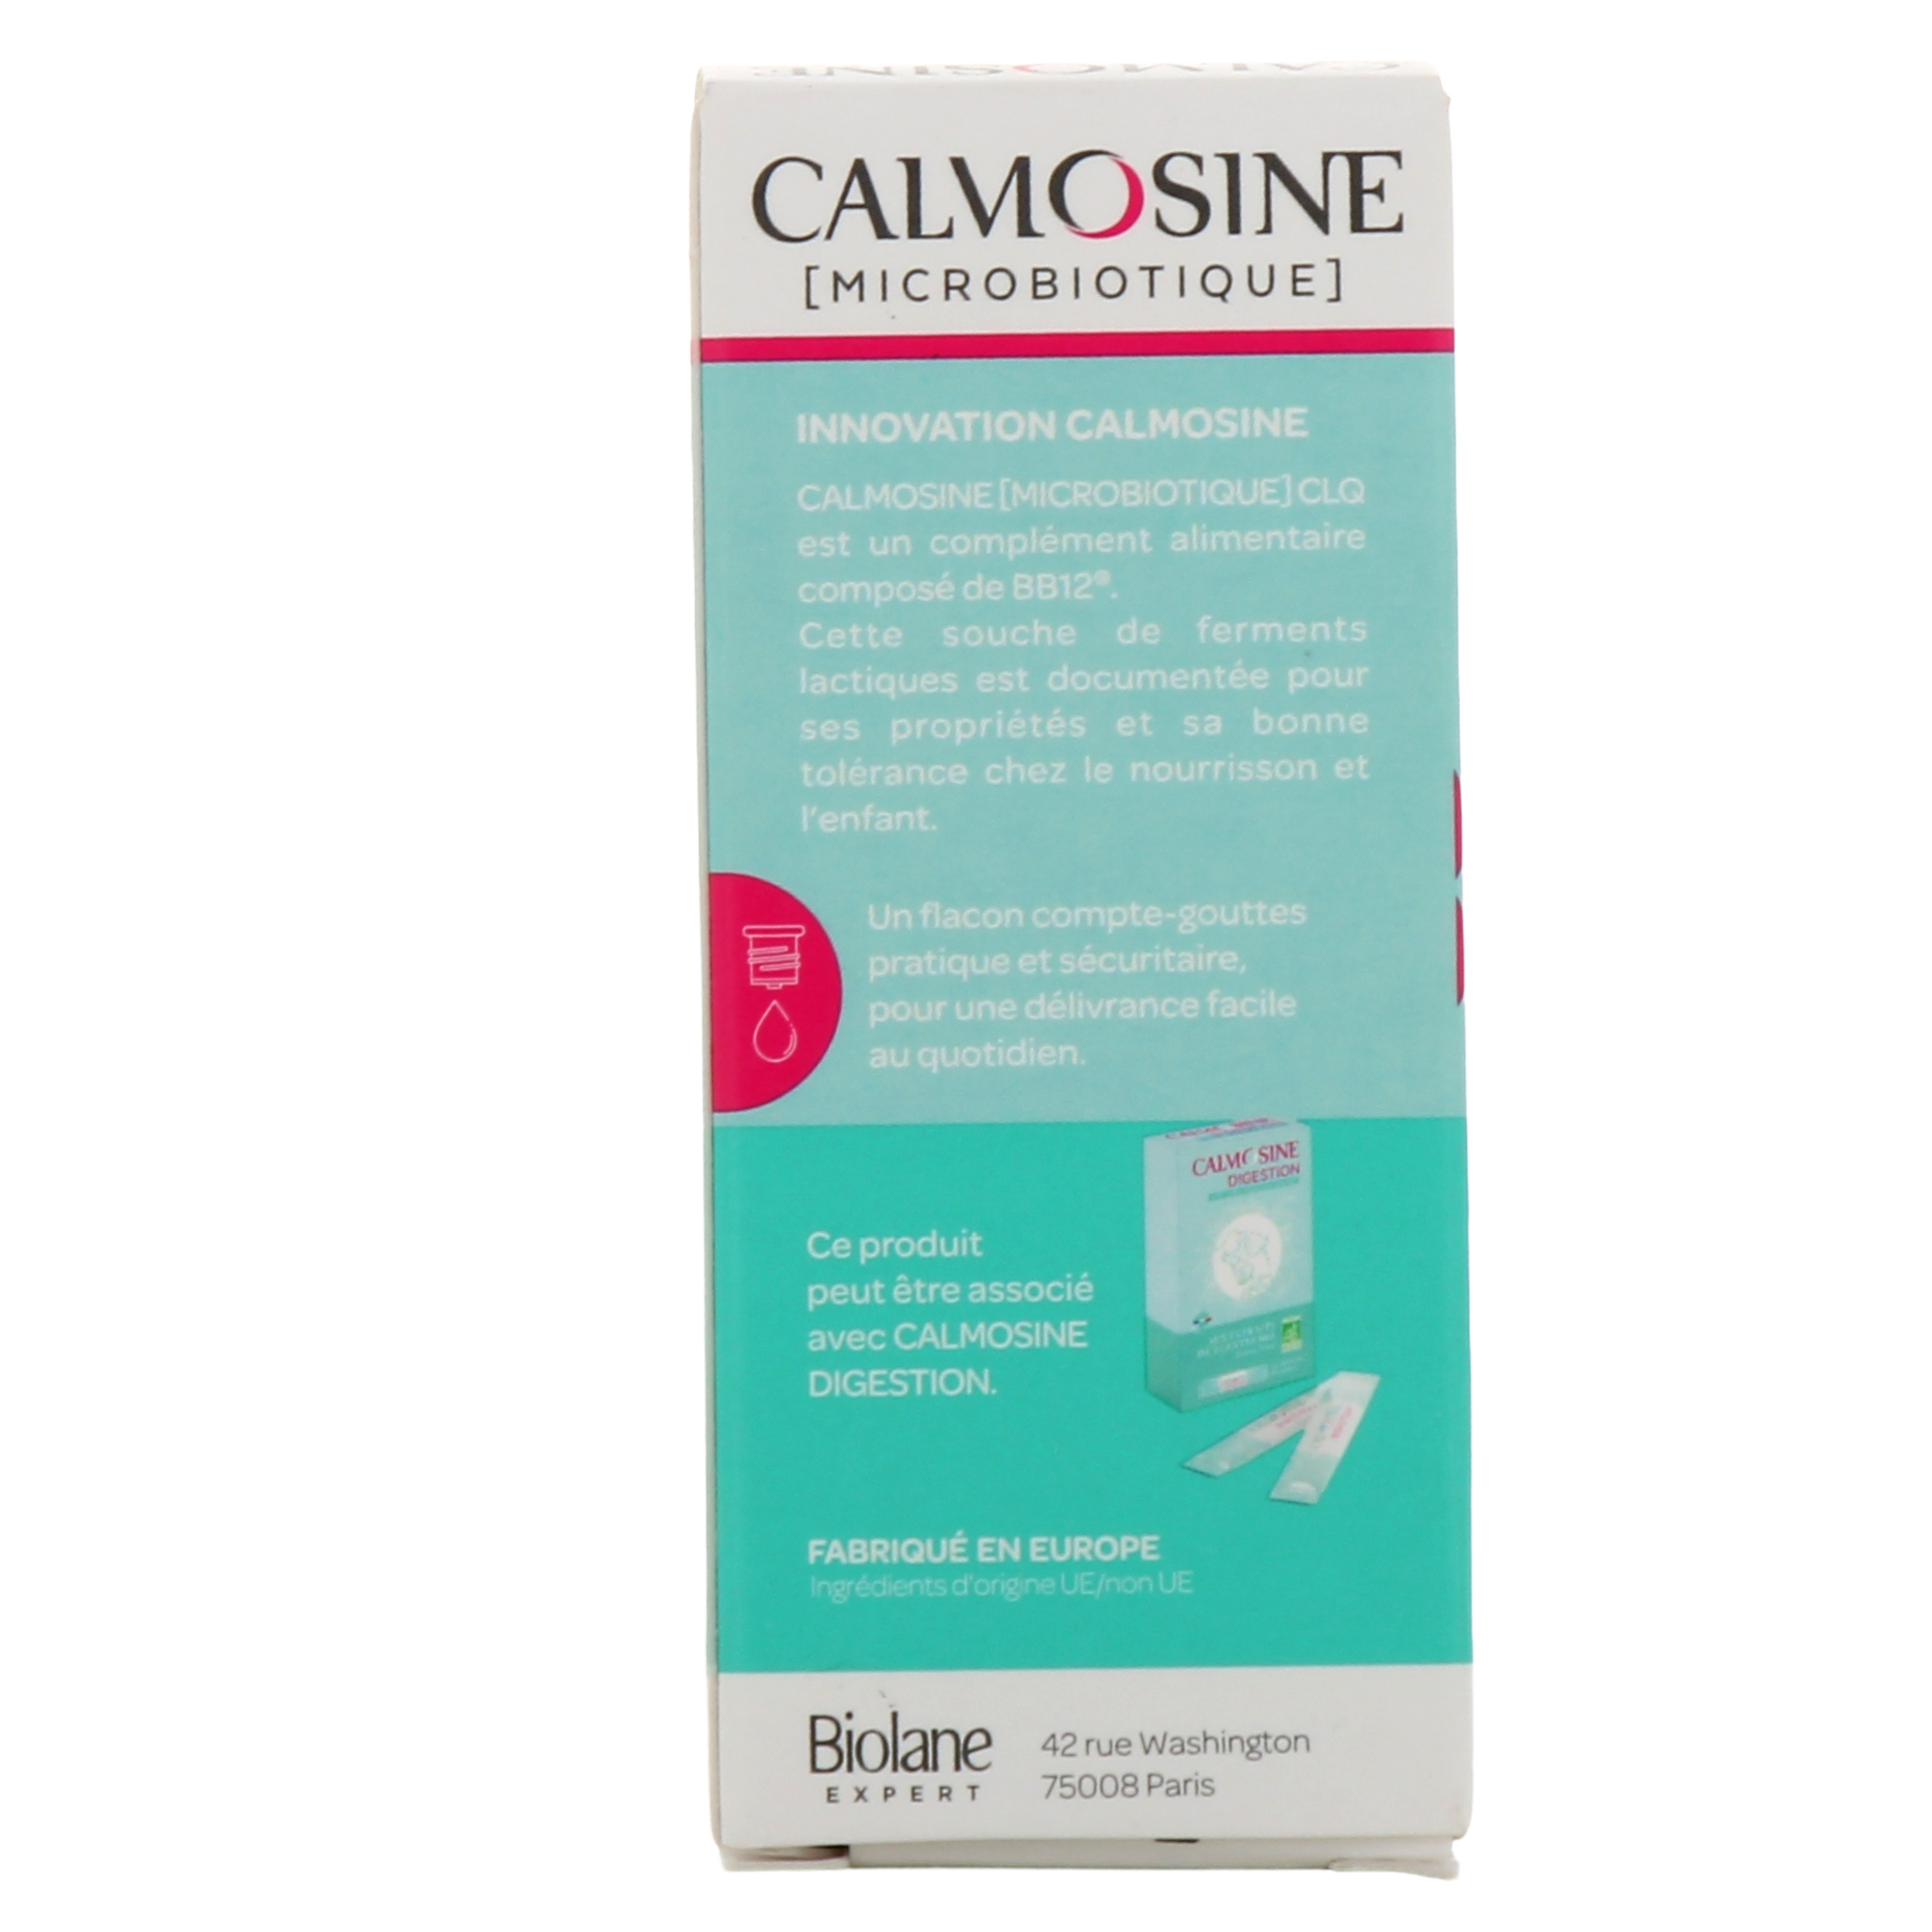 Calmosine Microbiotique CLQ 9ml